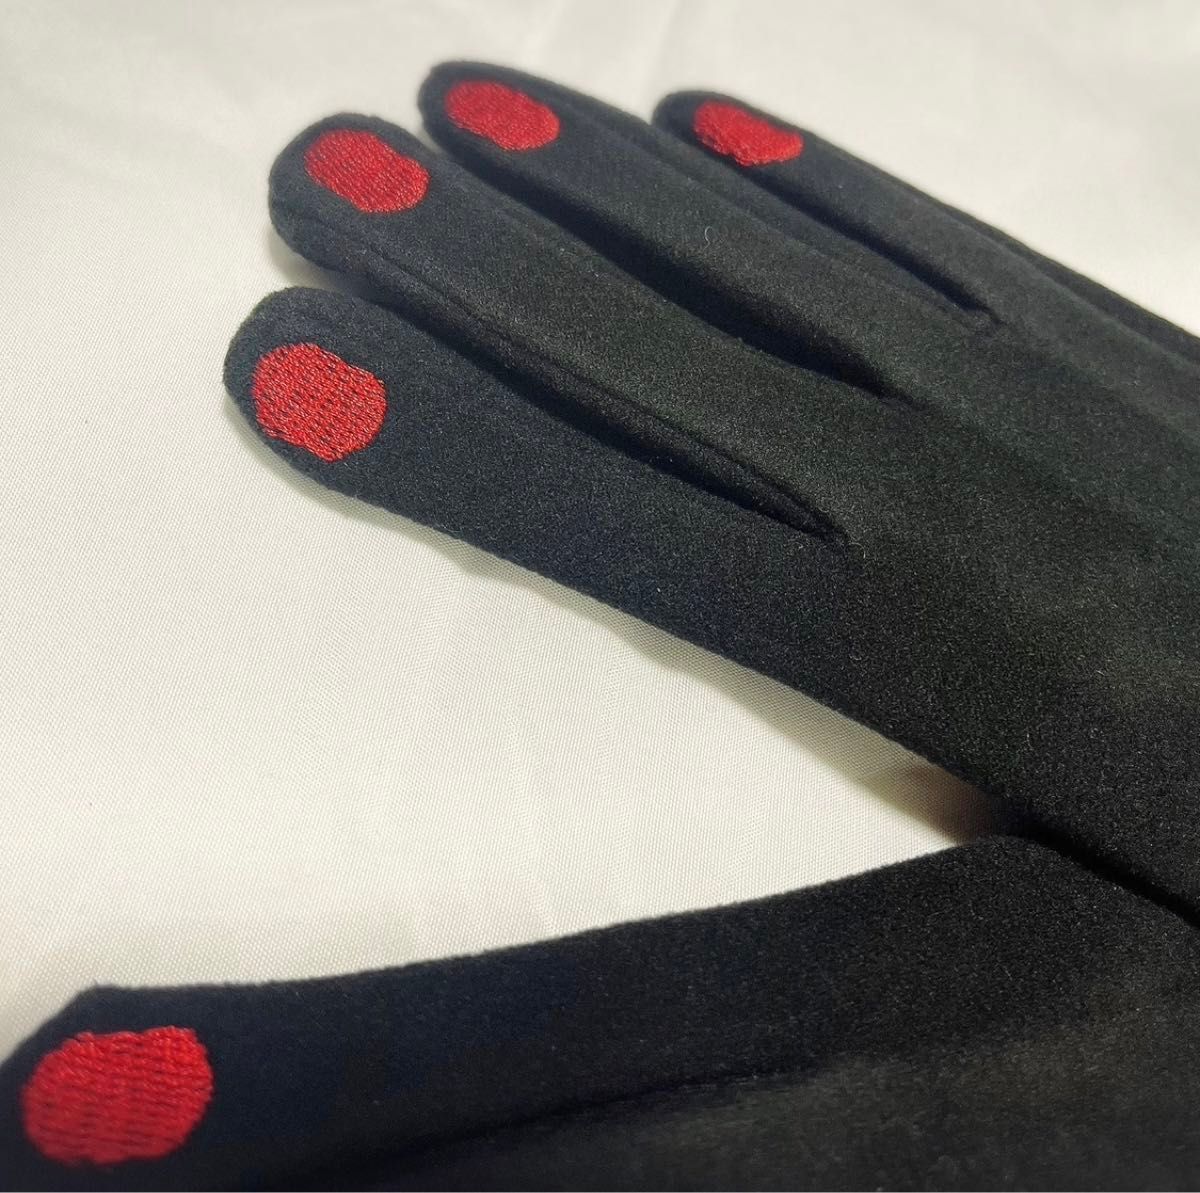 【スマホ対応 】手袋 SALE ネイルデザイン レディース かわいい 裏起毛 暖か